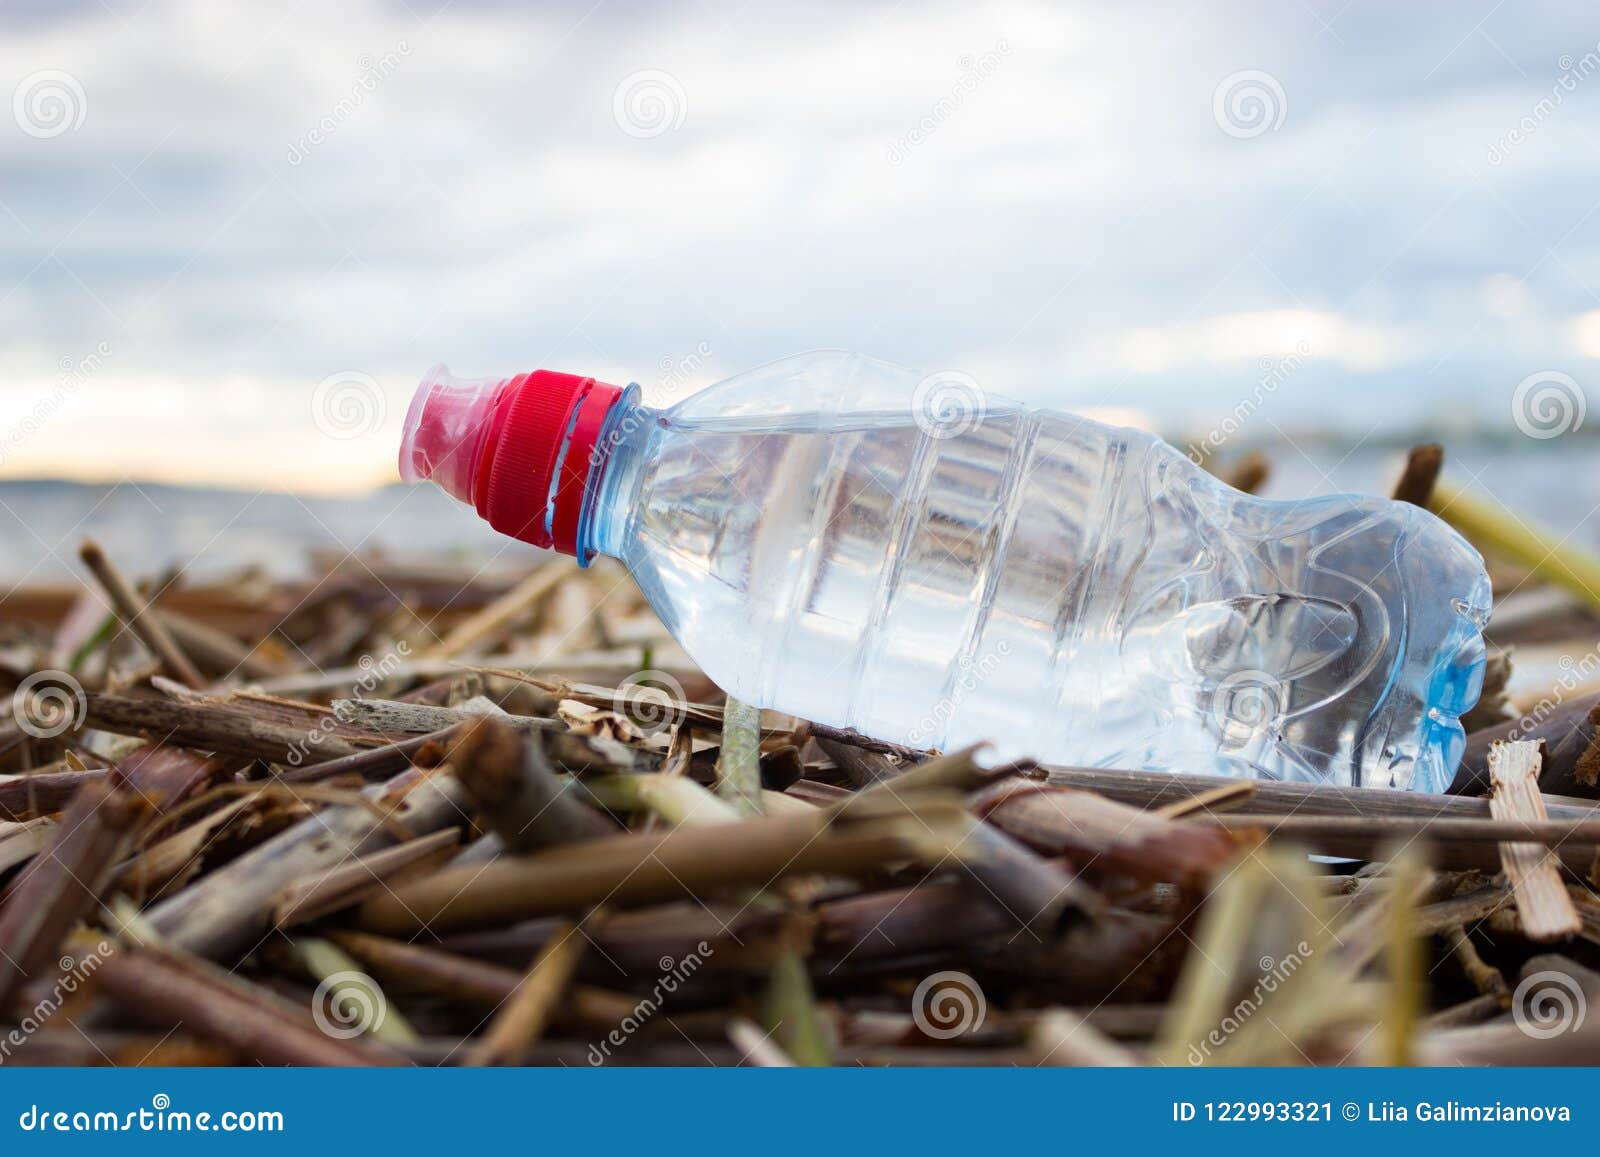 plastic water bottles pollute ocean